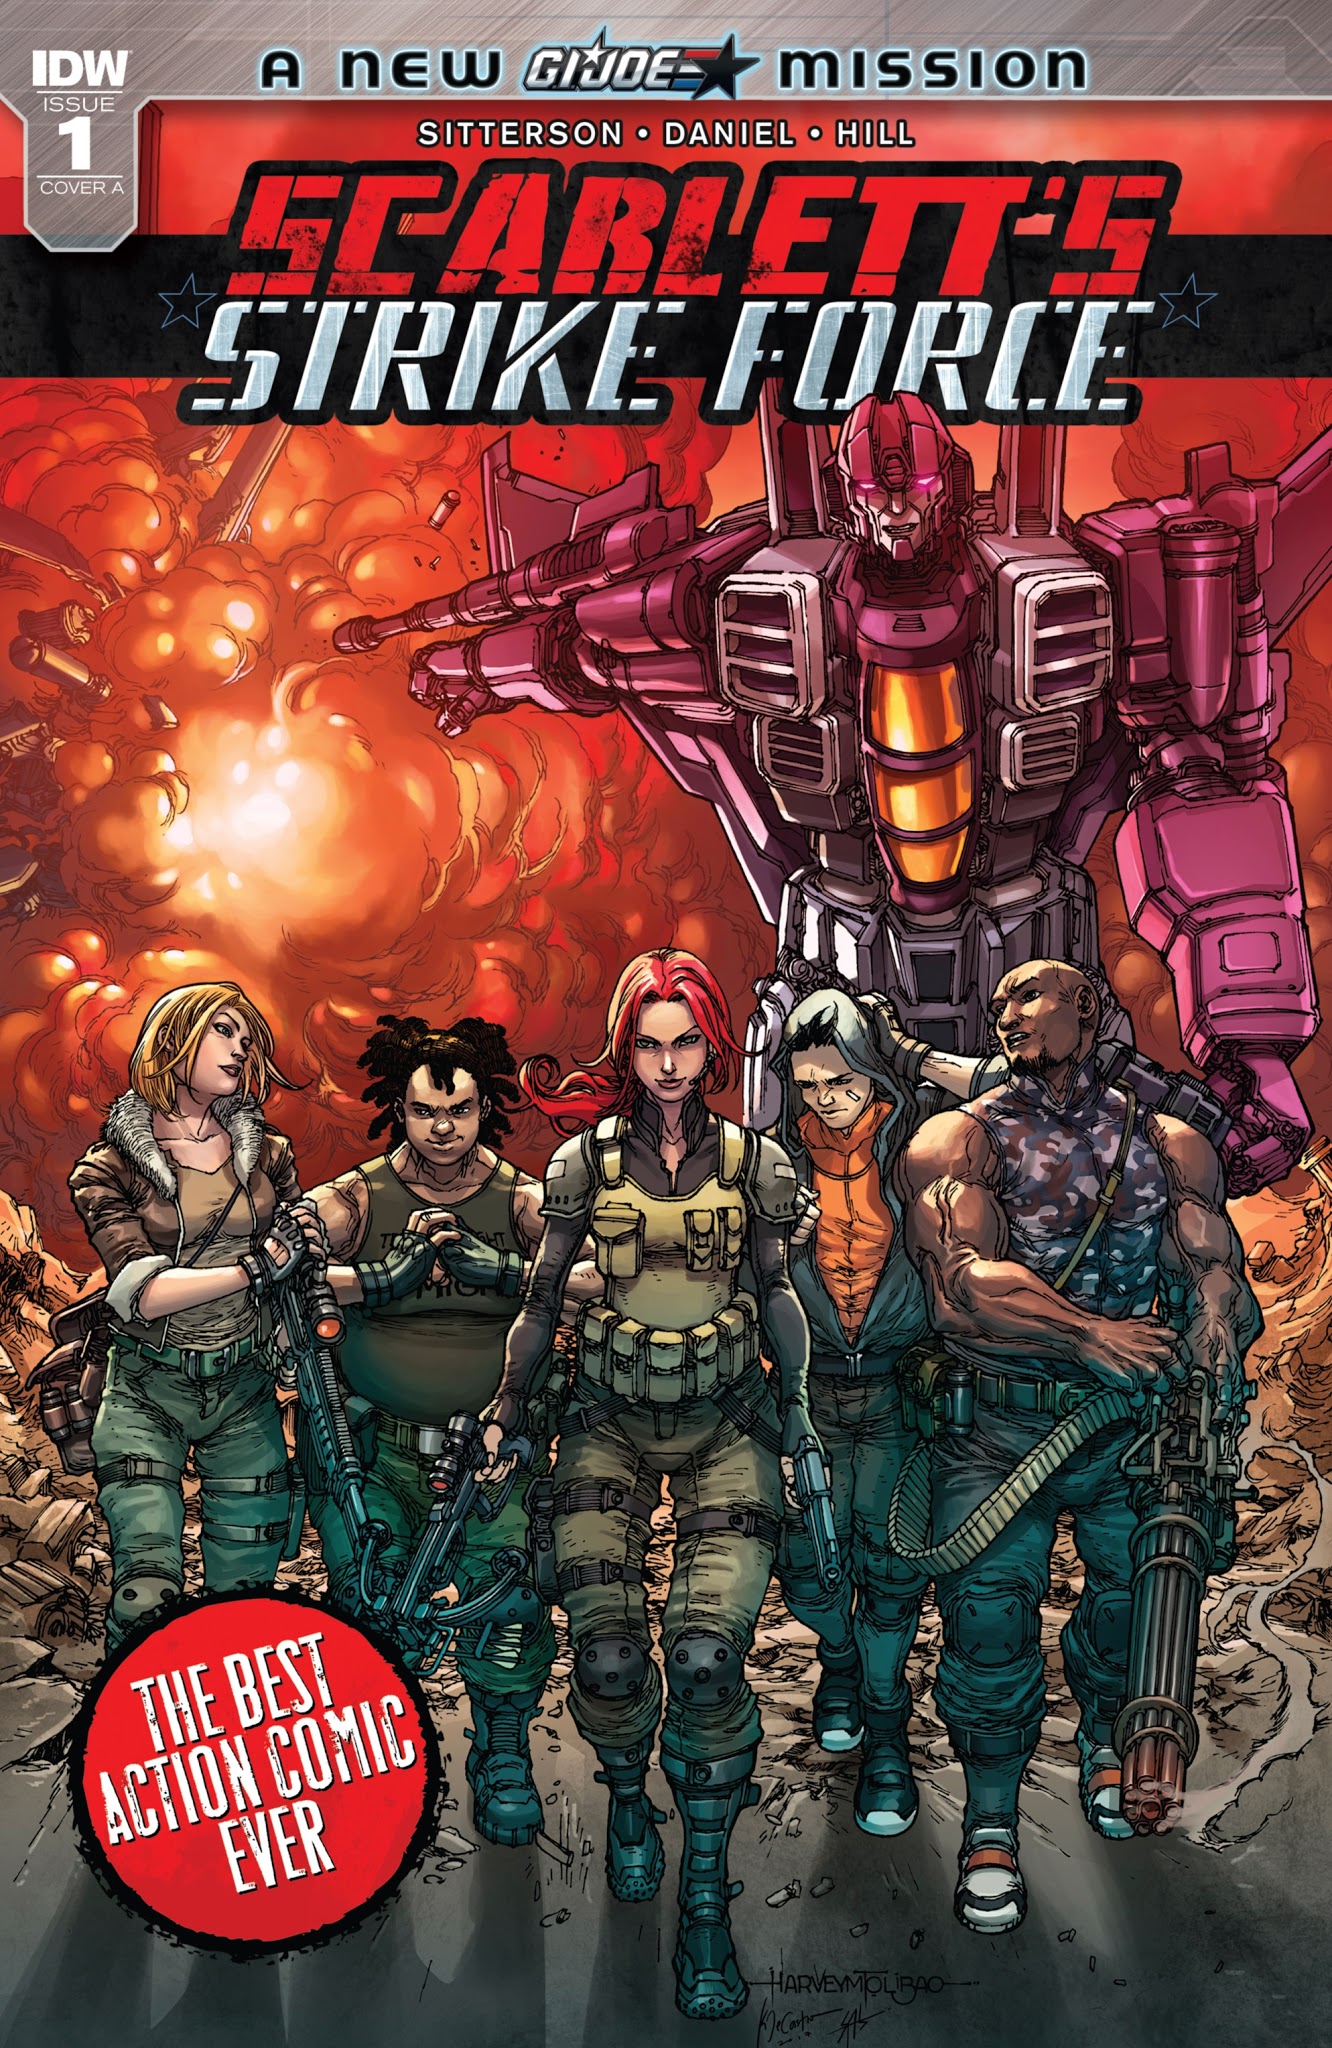 Read online Scarlett's Strike Force comic -  Issue #1 - 1